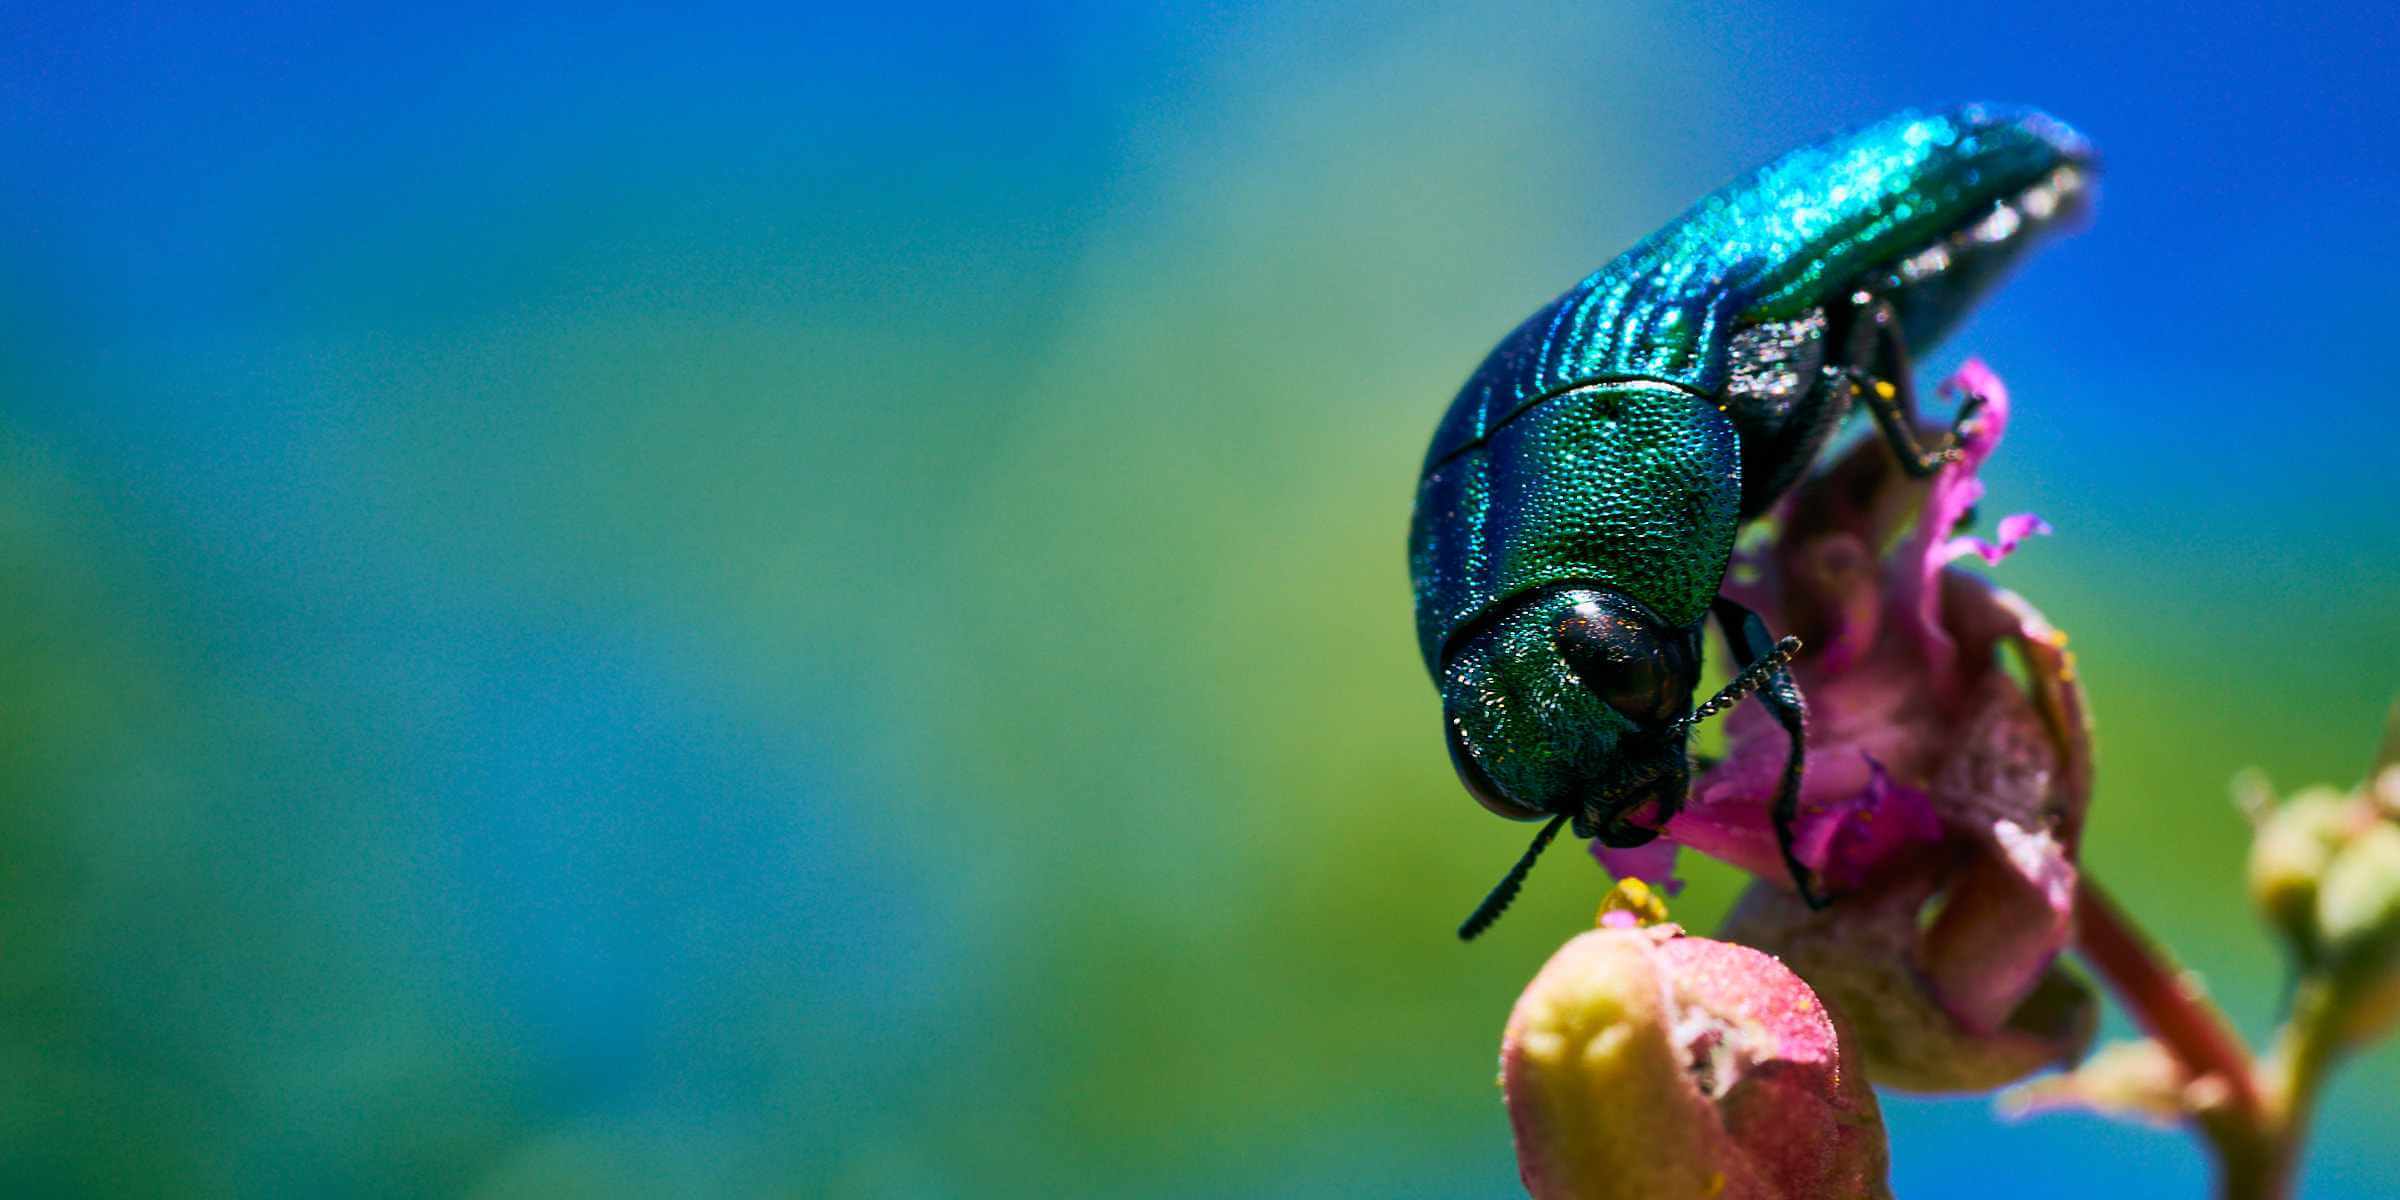 A glittering Jewel Beetle